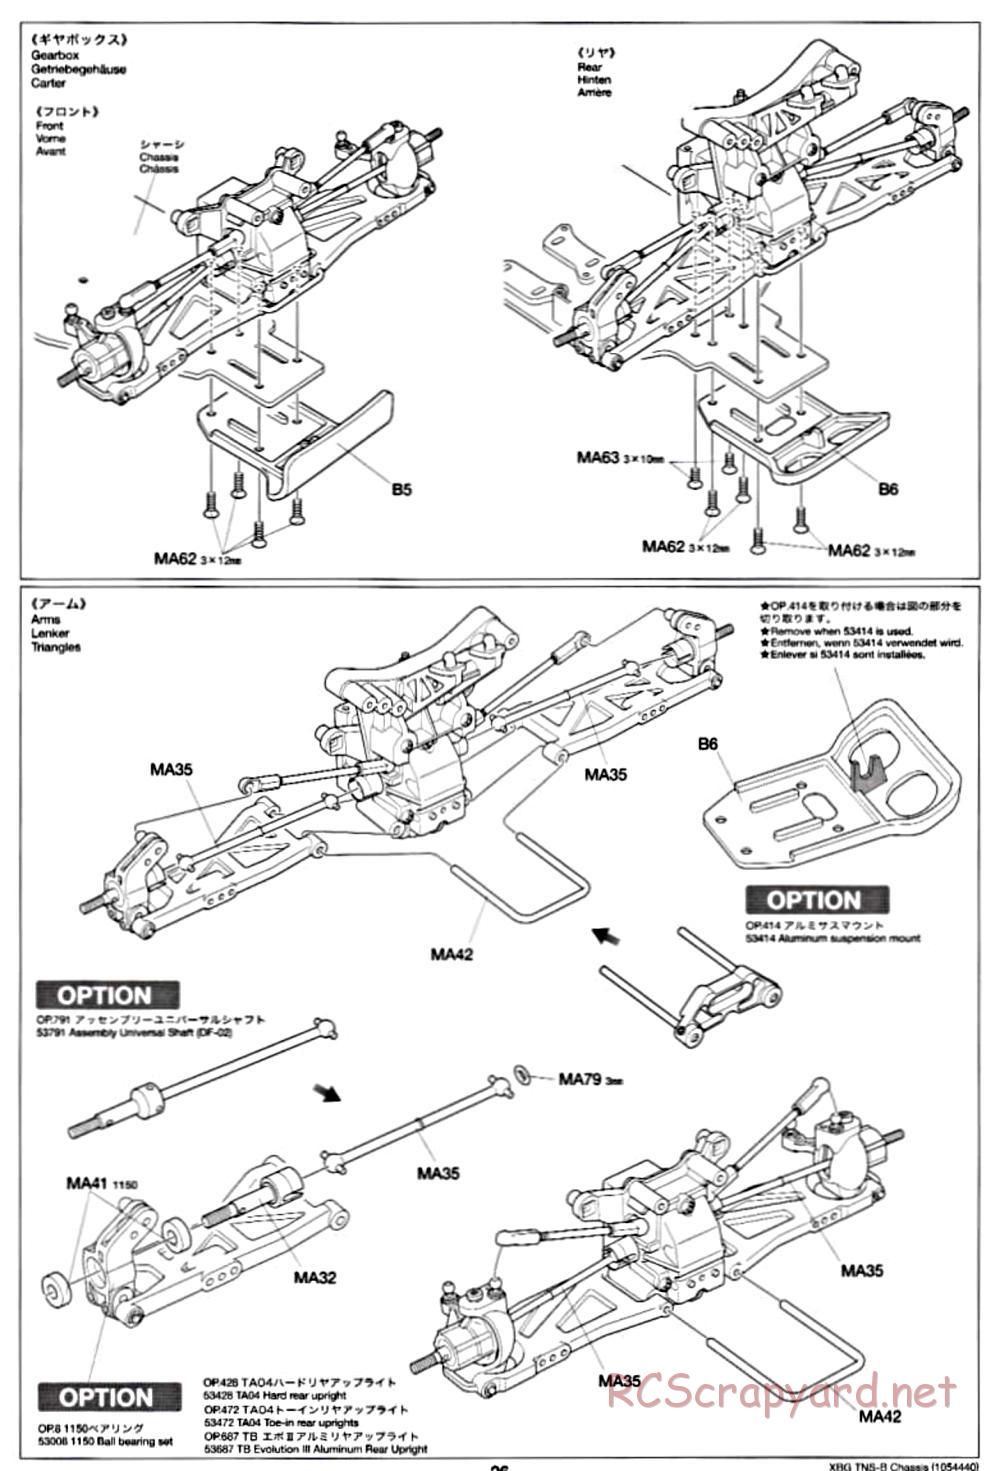 Tamiya - TNS-B Chassis - Manual - Page 26